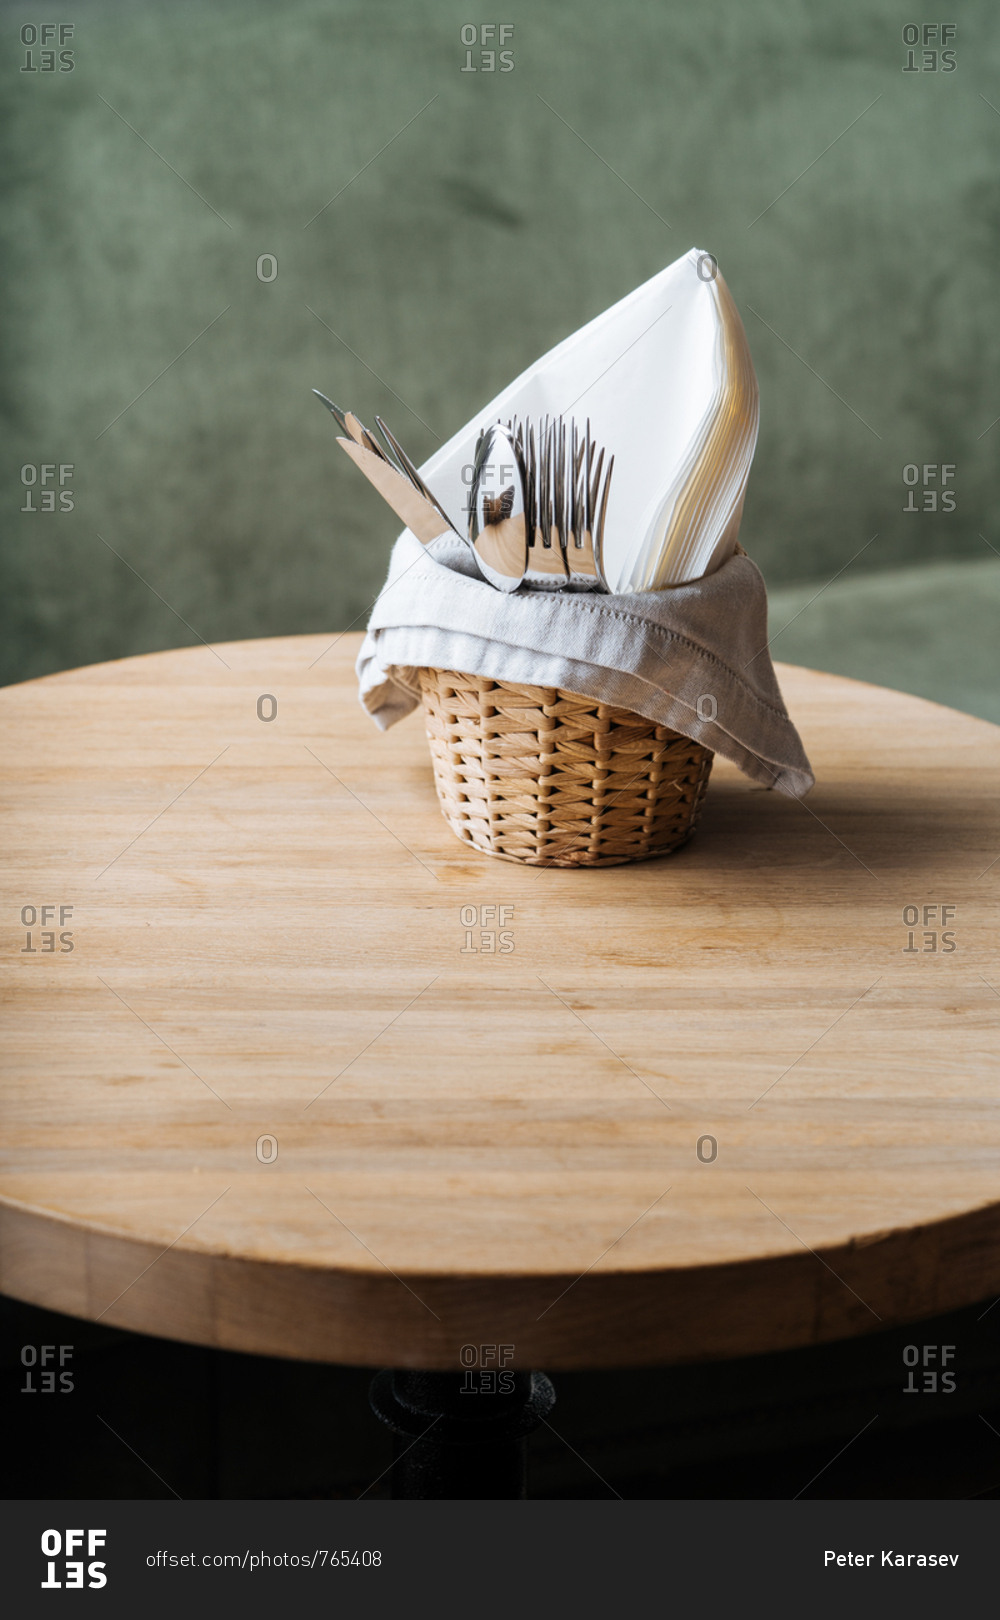 Basket of utensils on a sage green background